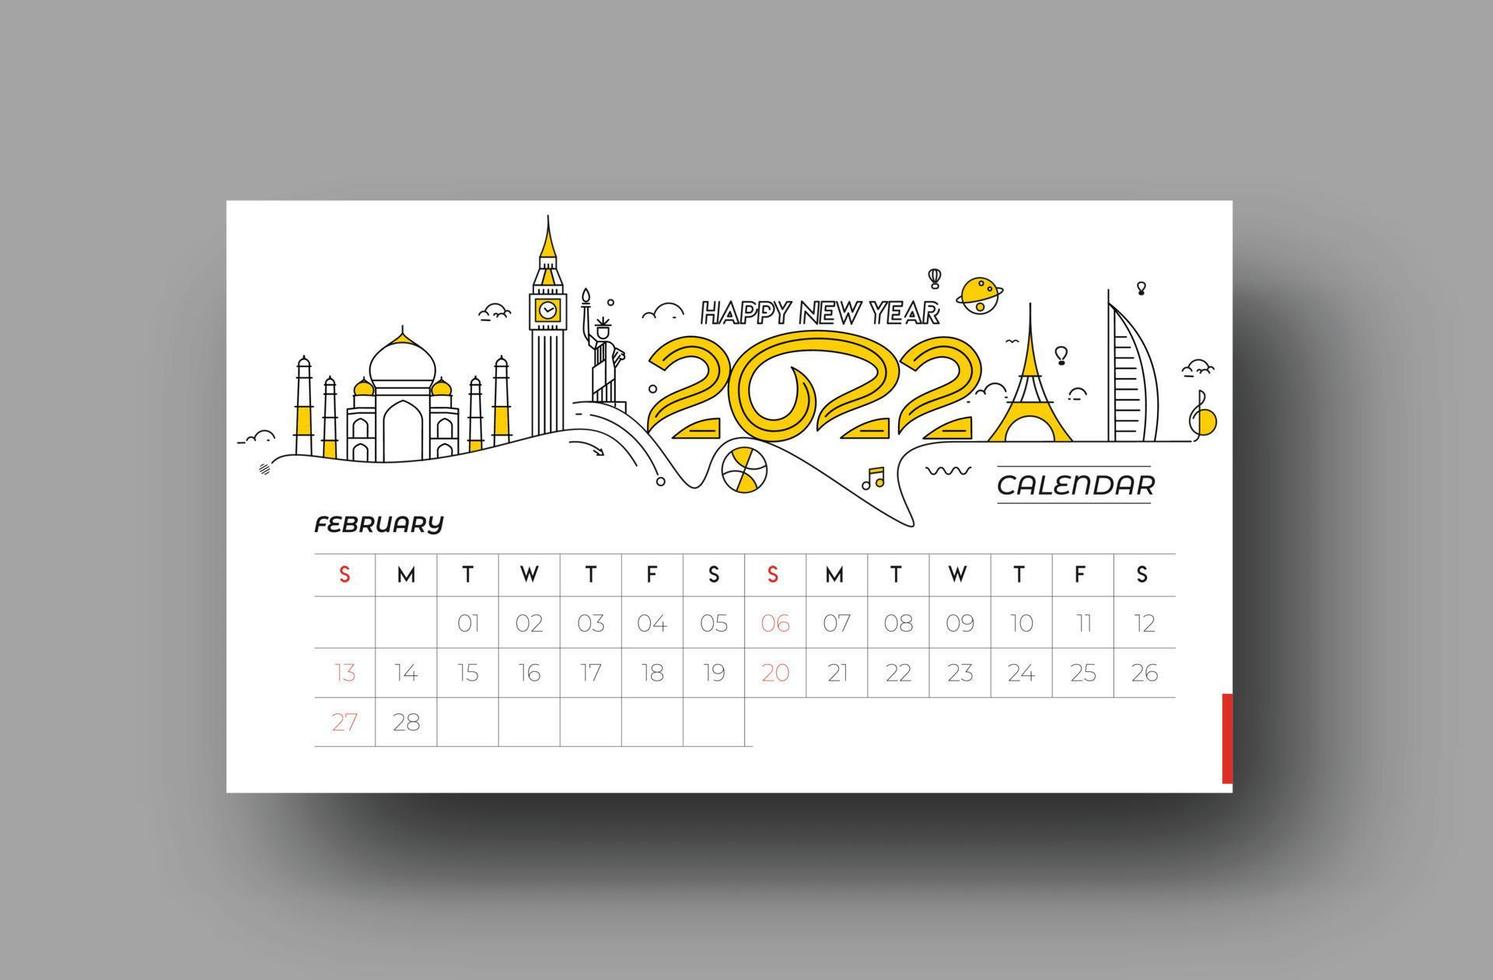 Feliz año nuevo 2022 calendario de febrero - elementos de diseño de vacaciones de año nuevo para tarjetas navideñas, cartel de banner de calendario para decoraciones, fondo de ilustración vectorial. vector